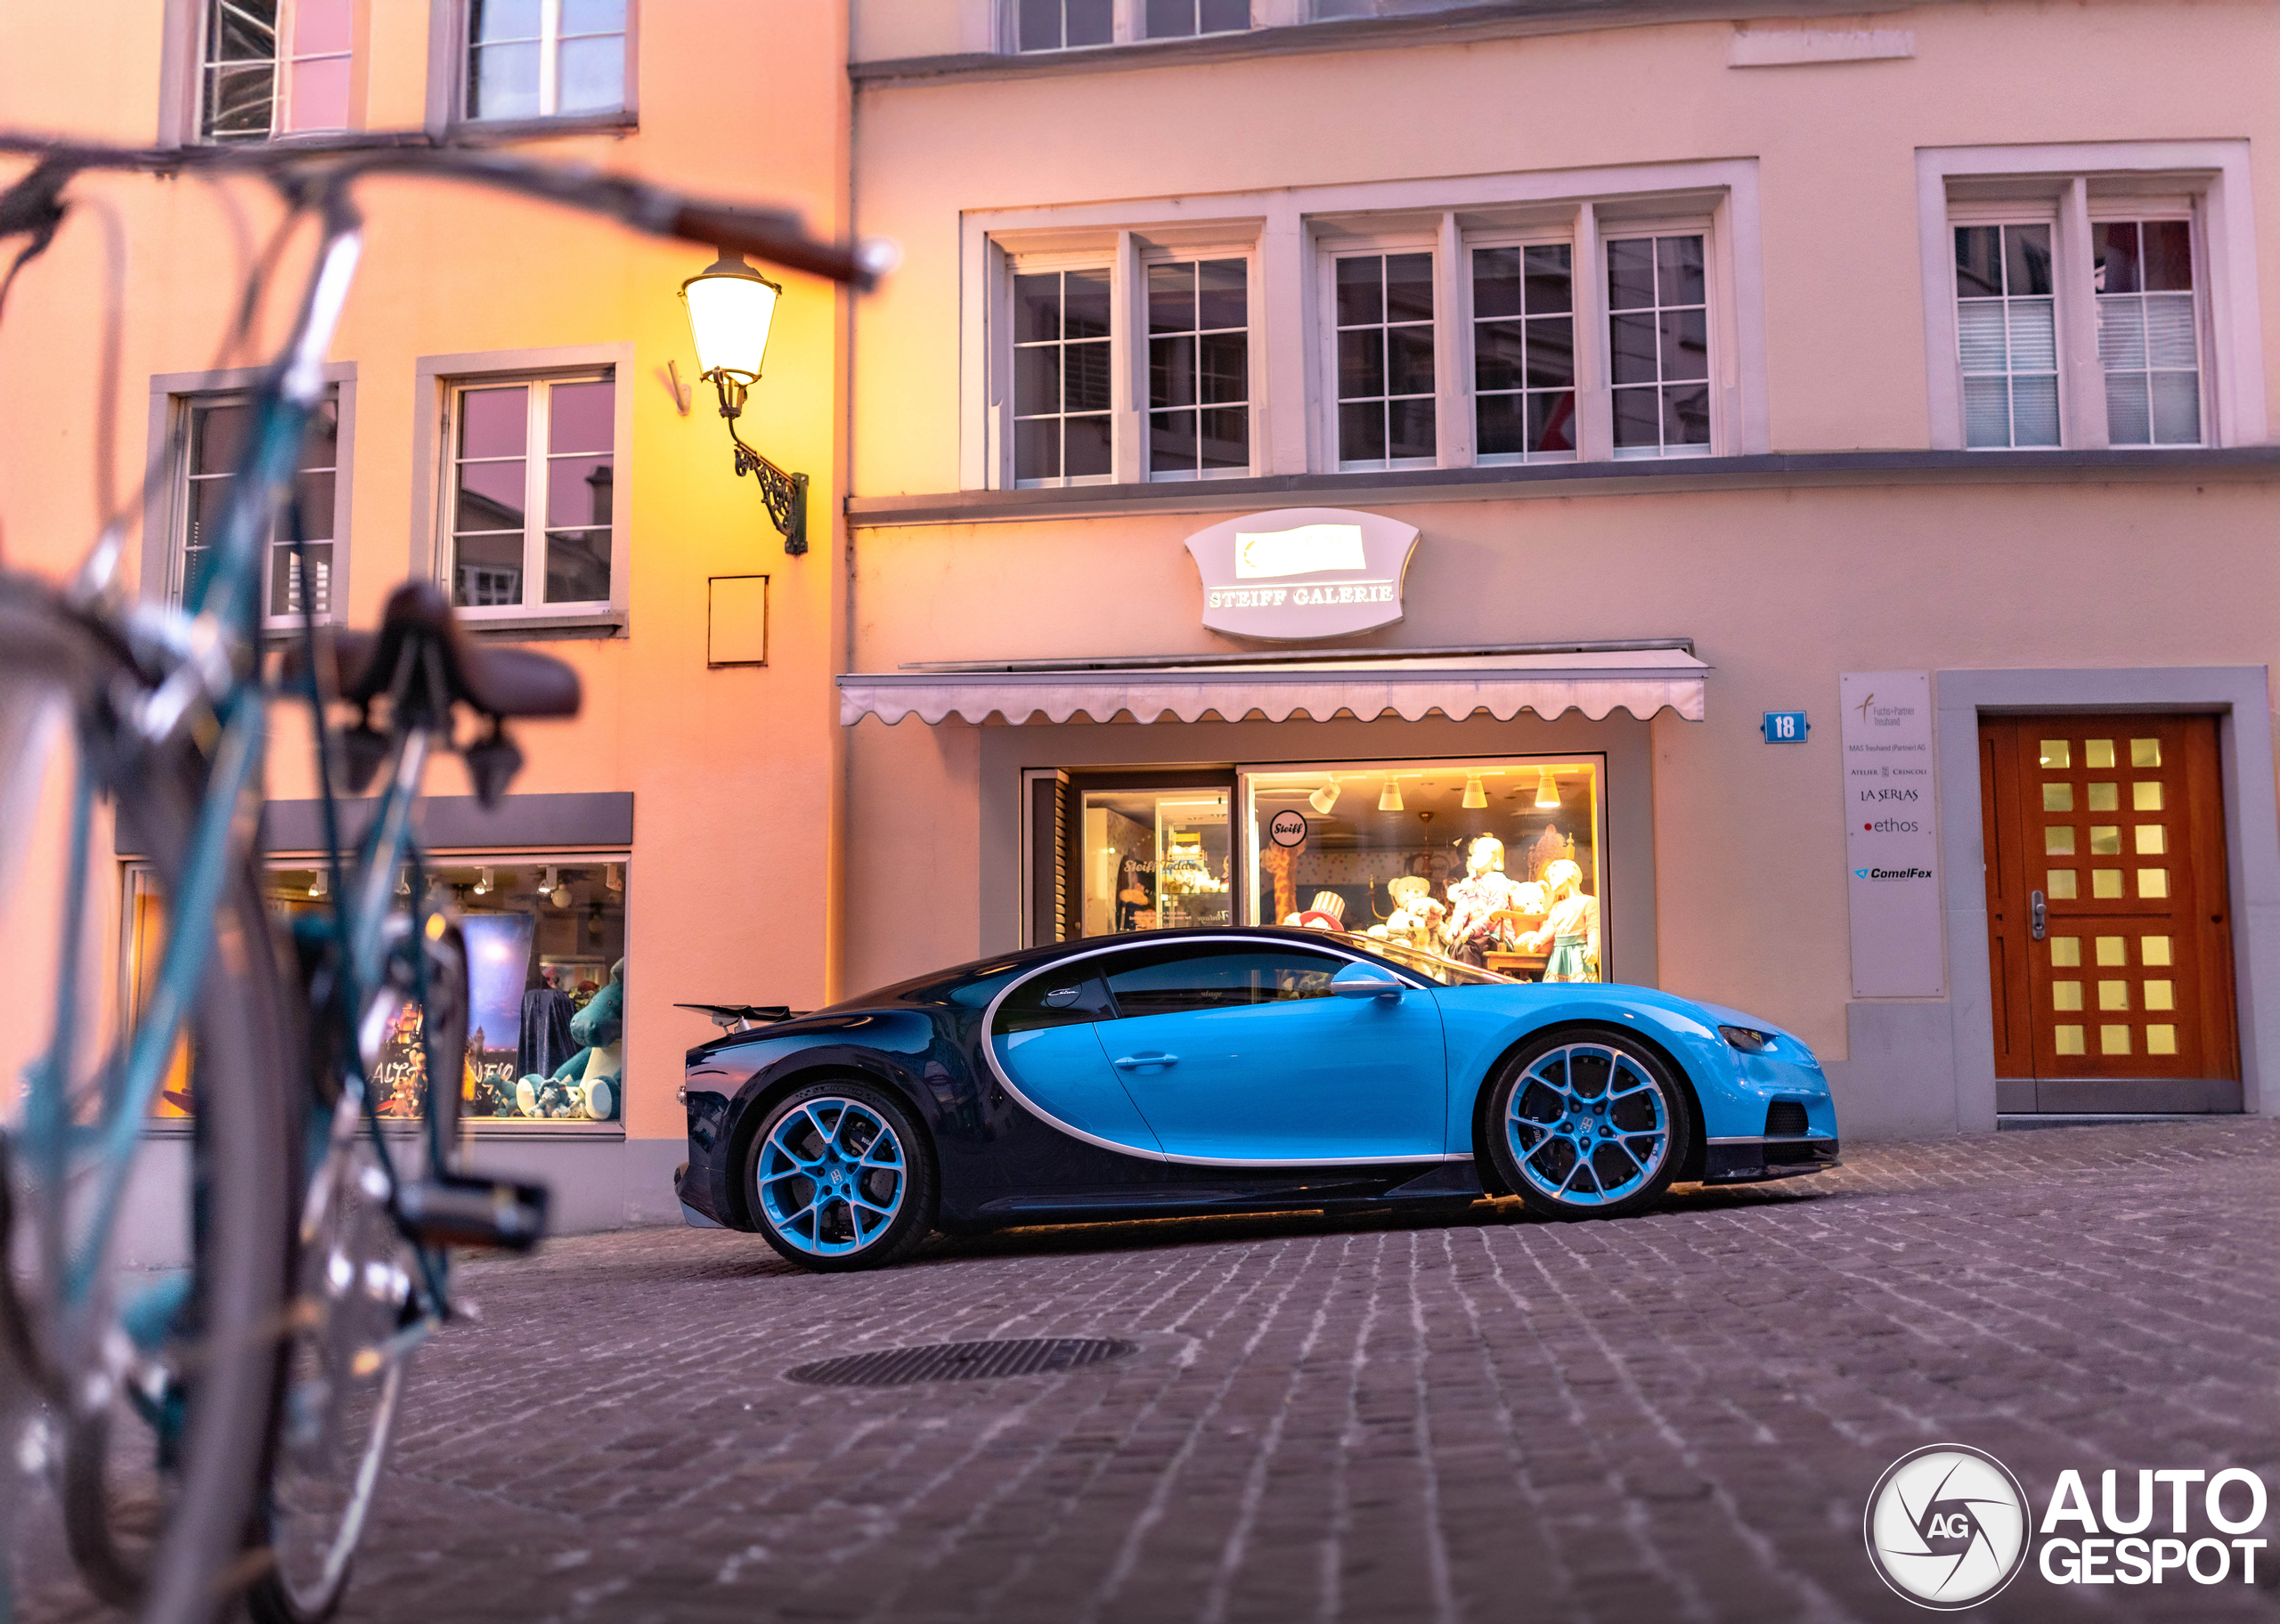 Another Bugatti in the Bugatti-City